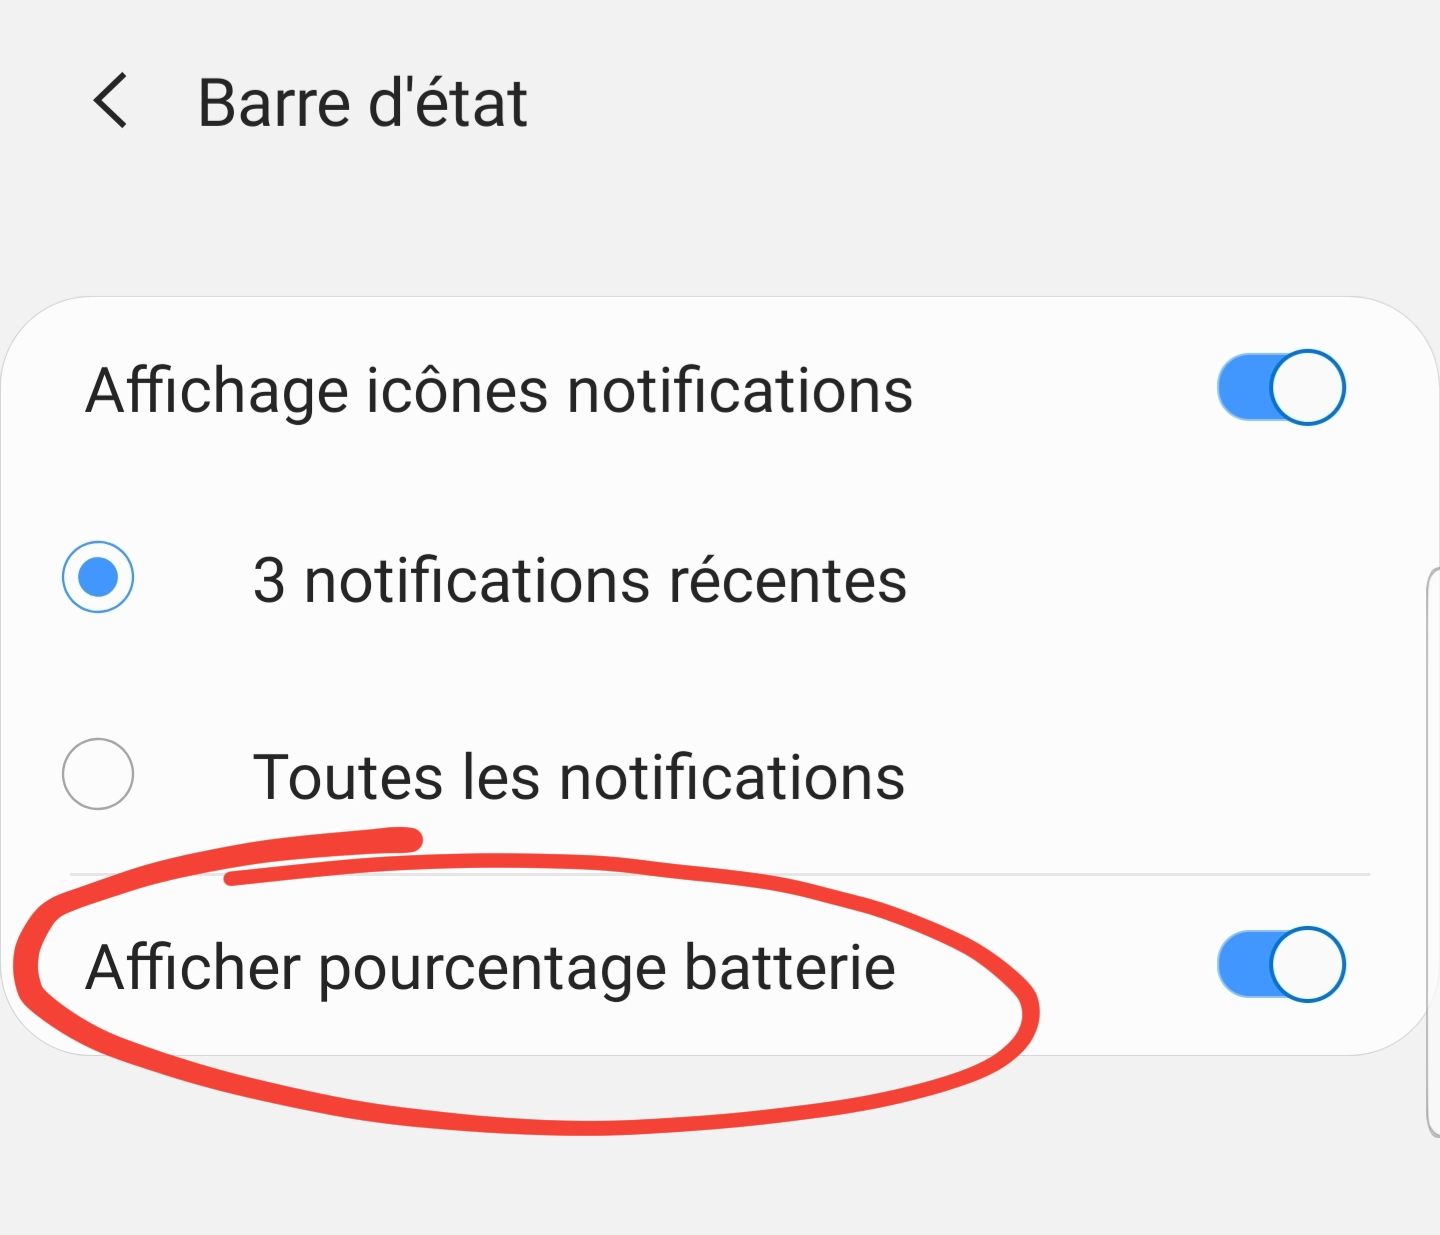 Afficher le pourcentage de batterie disponible - Android